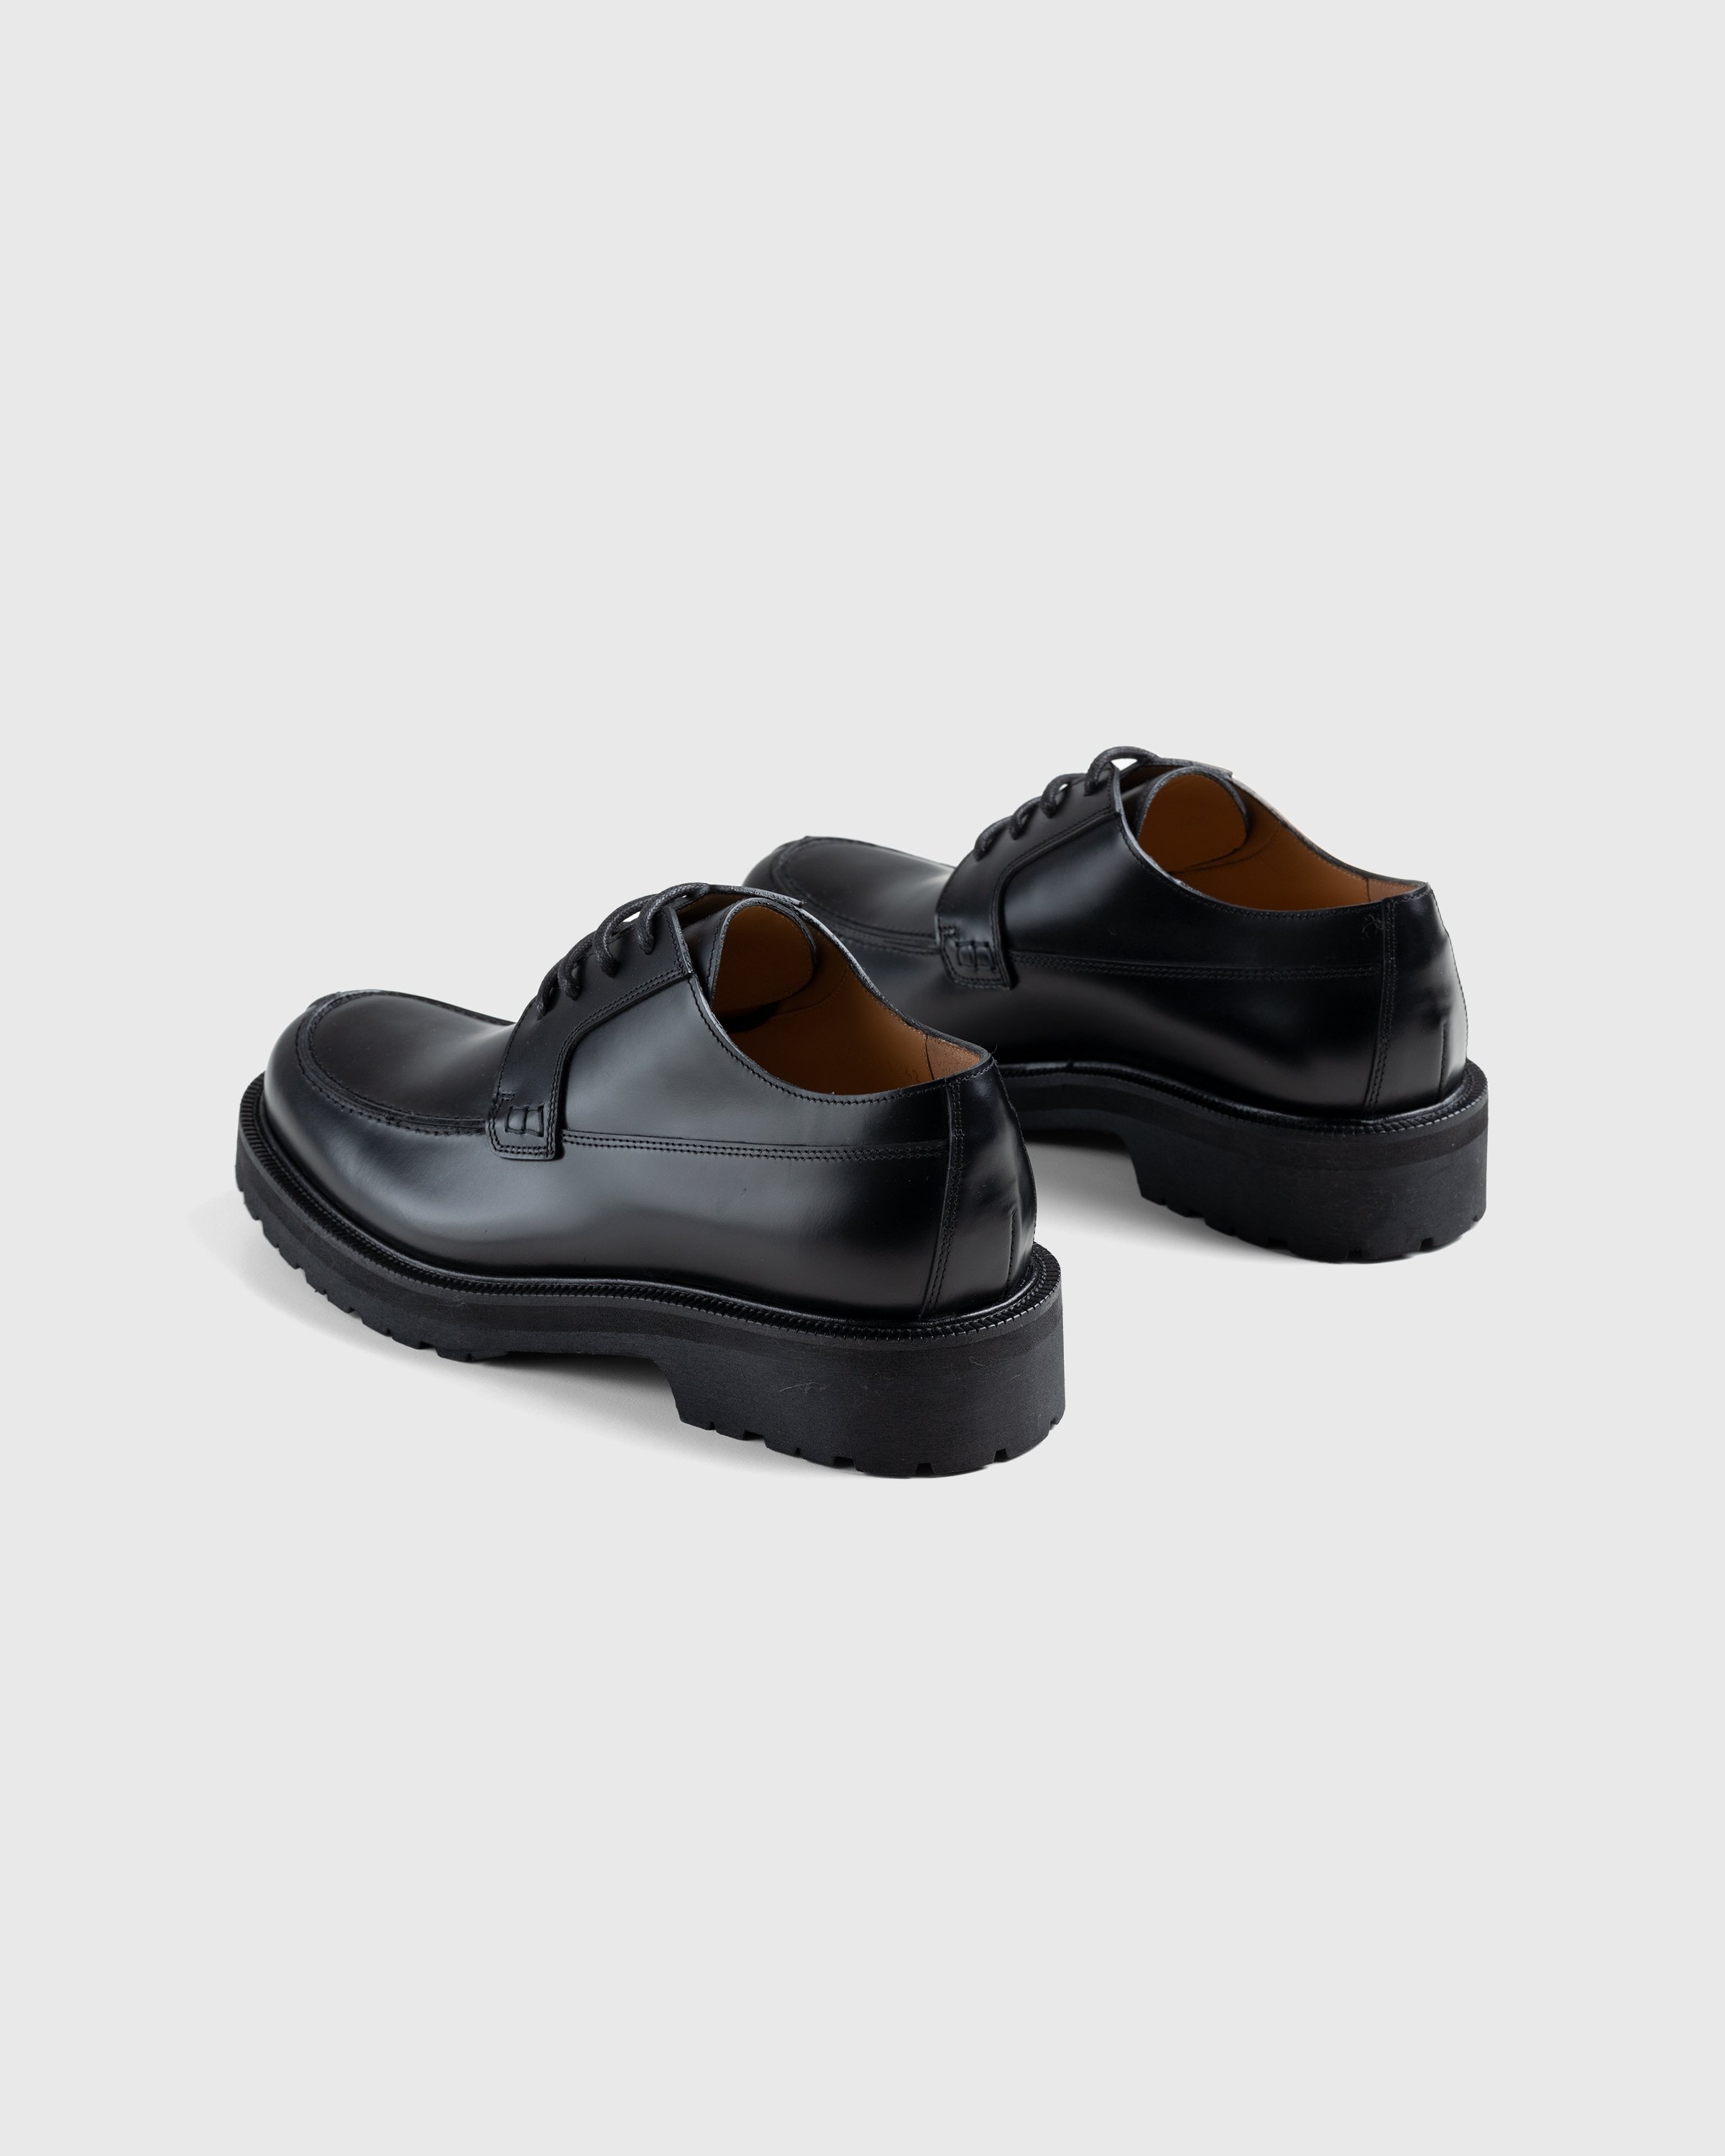 Dries van Noten - Patent Leather Derbies - Footwear - Black - Image 4